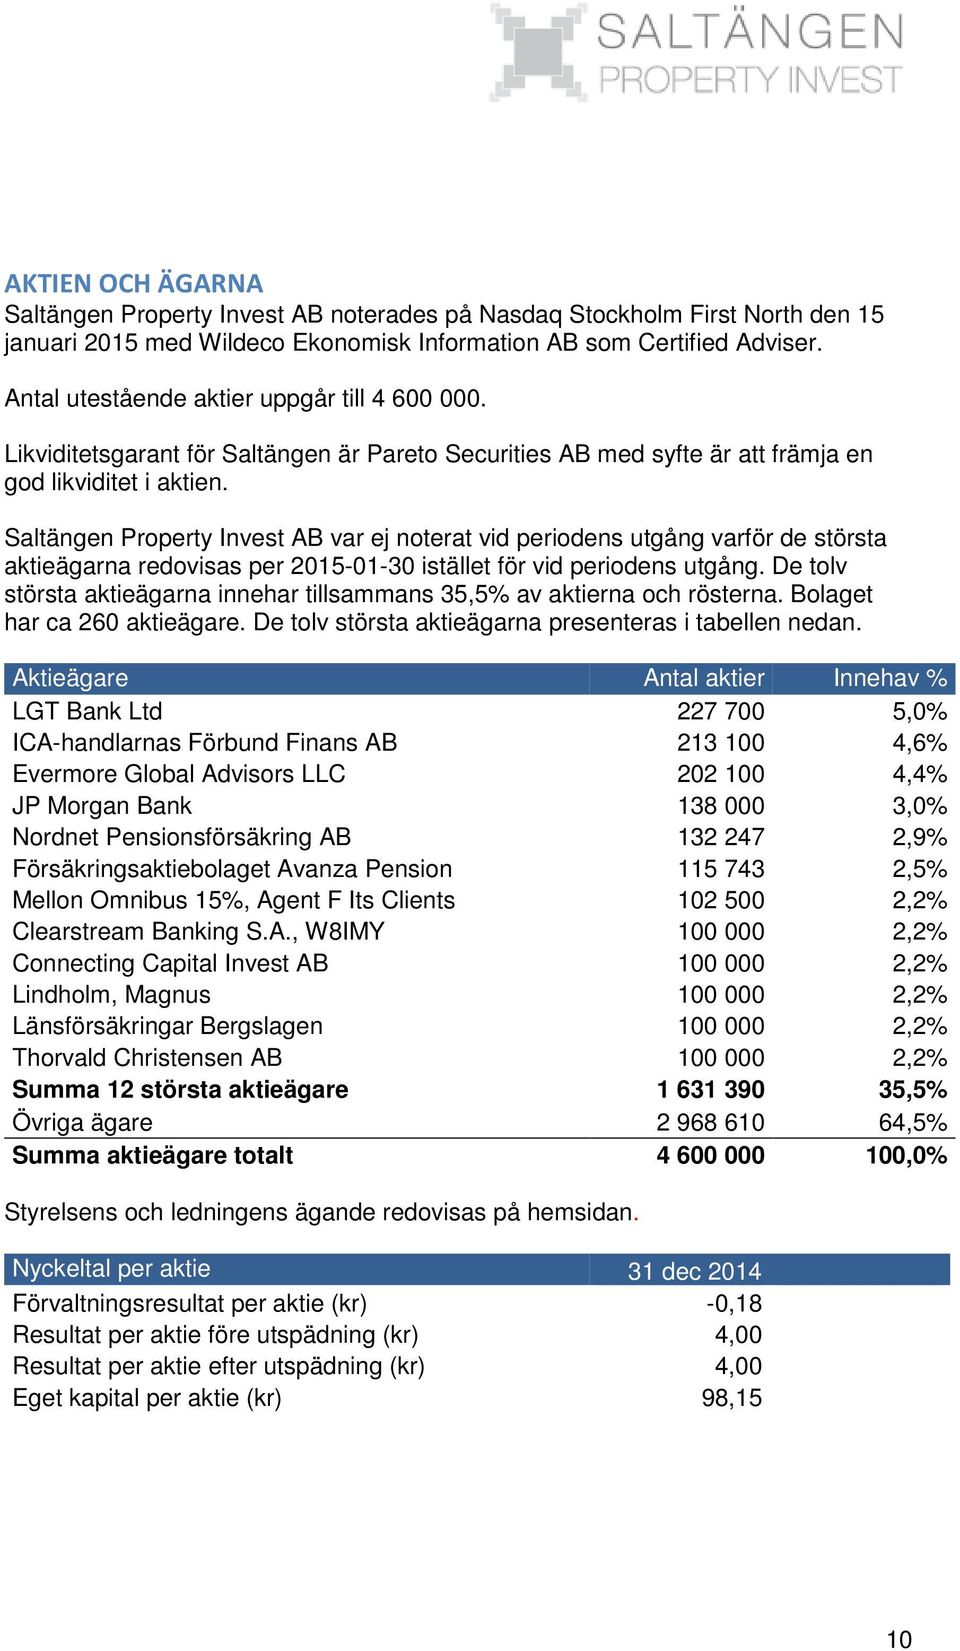 Saltängen Property Invest AB var ej noterat vid periodens utgång varför de största aktieägarna redovisas per 2015-01-30 istället för vid periodens utgång.